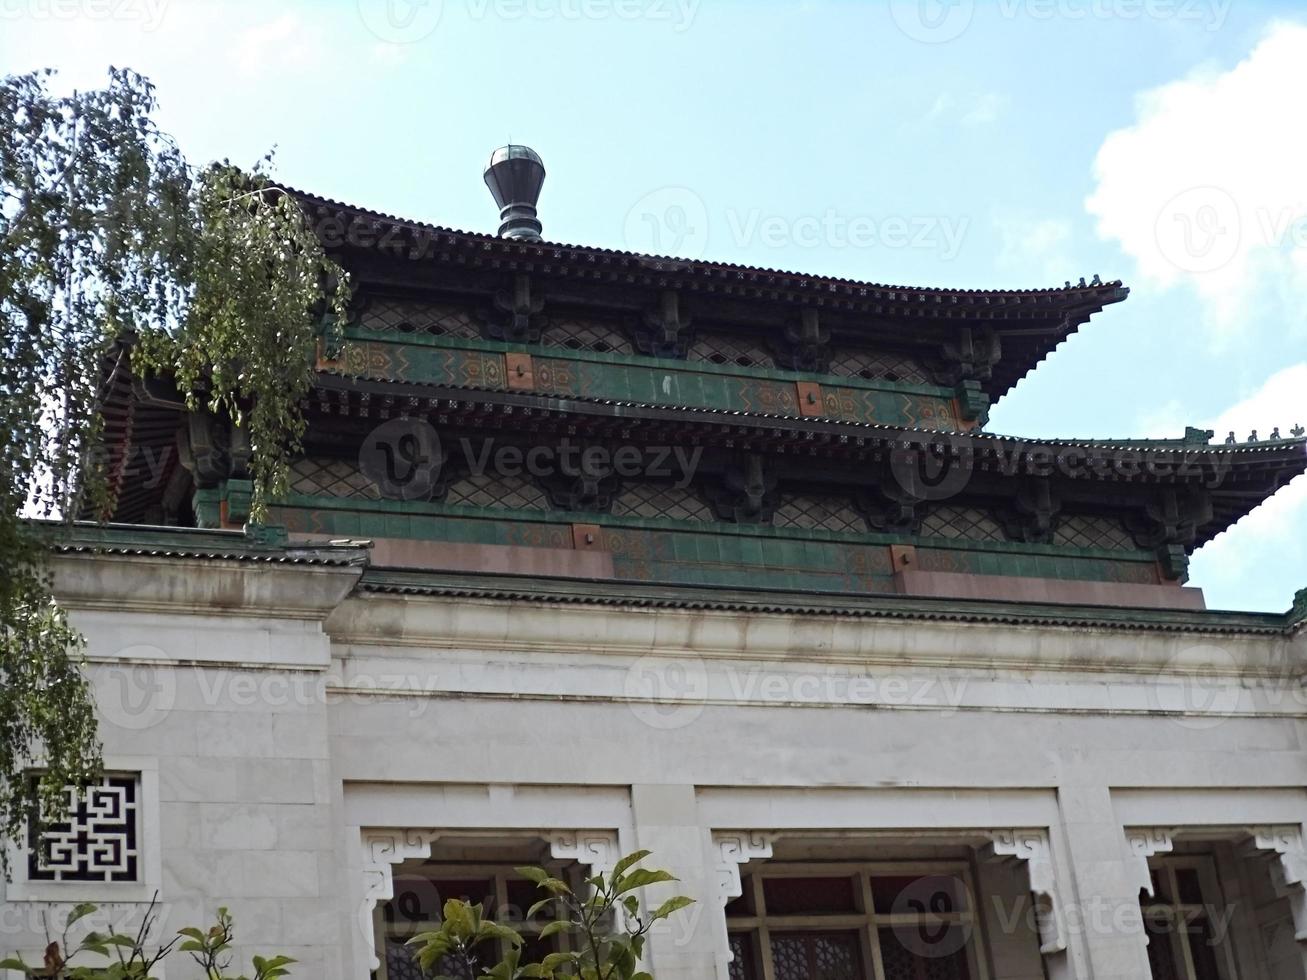 detalhe do telhado do edifício chinês foto